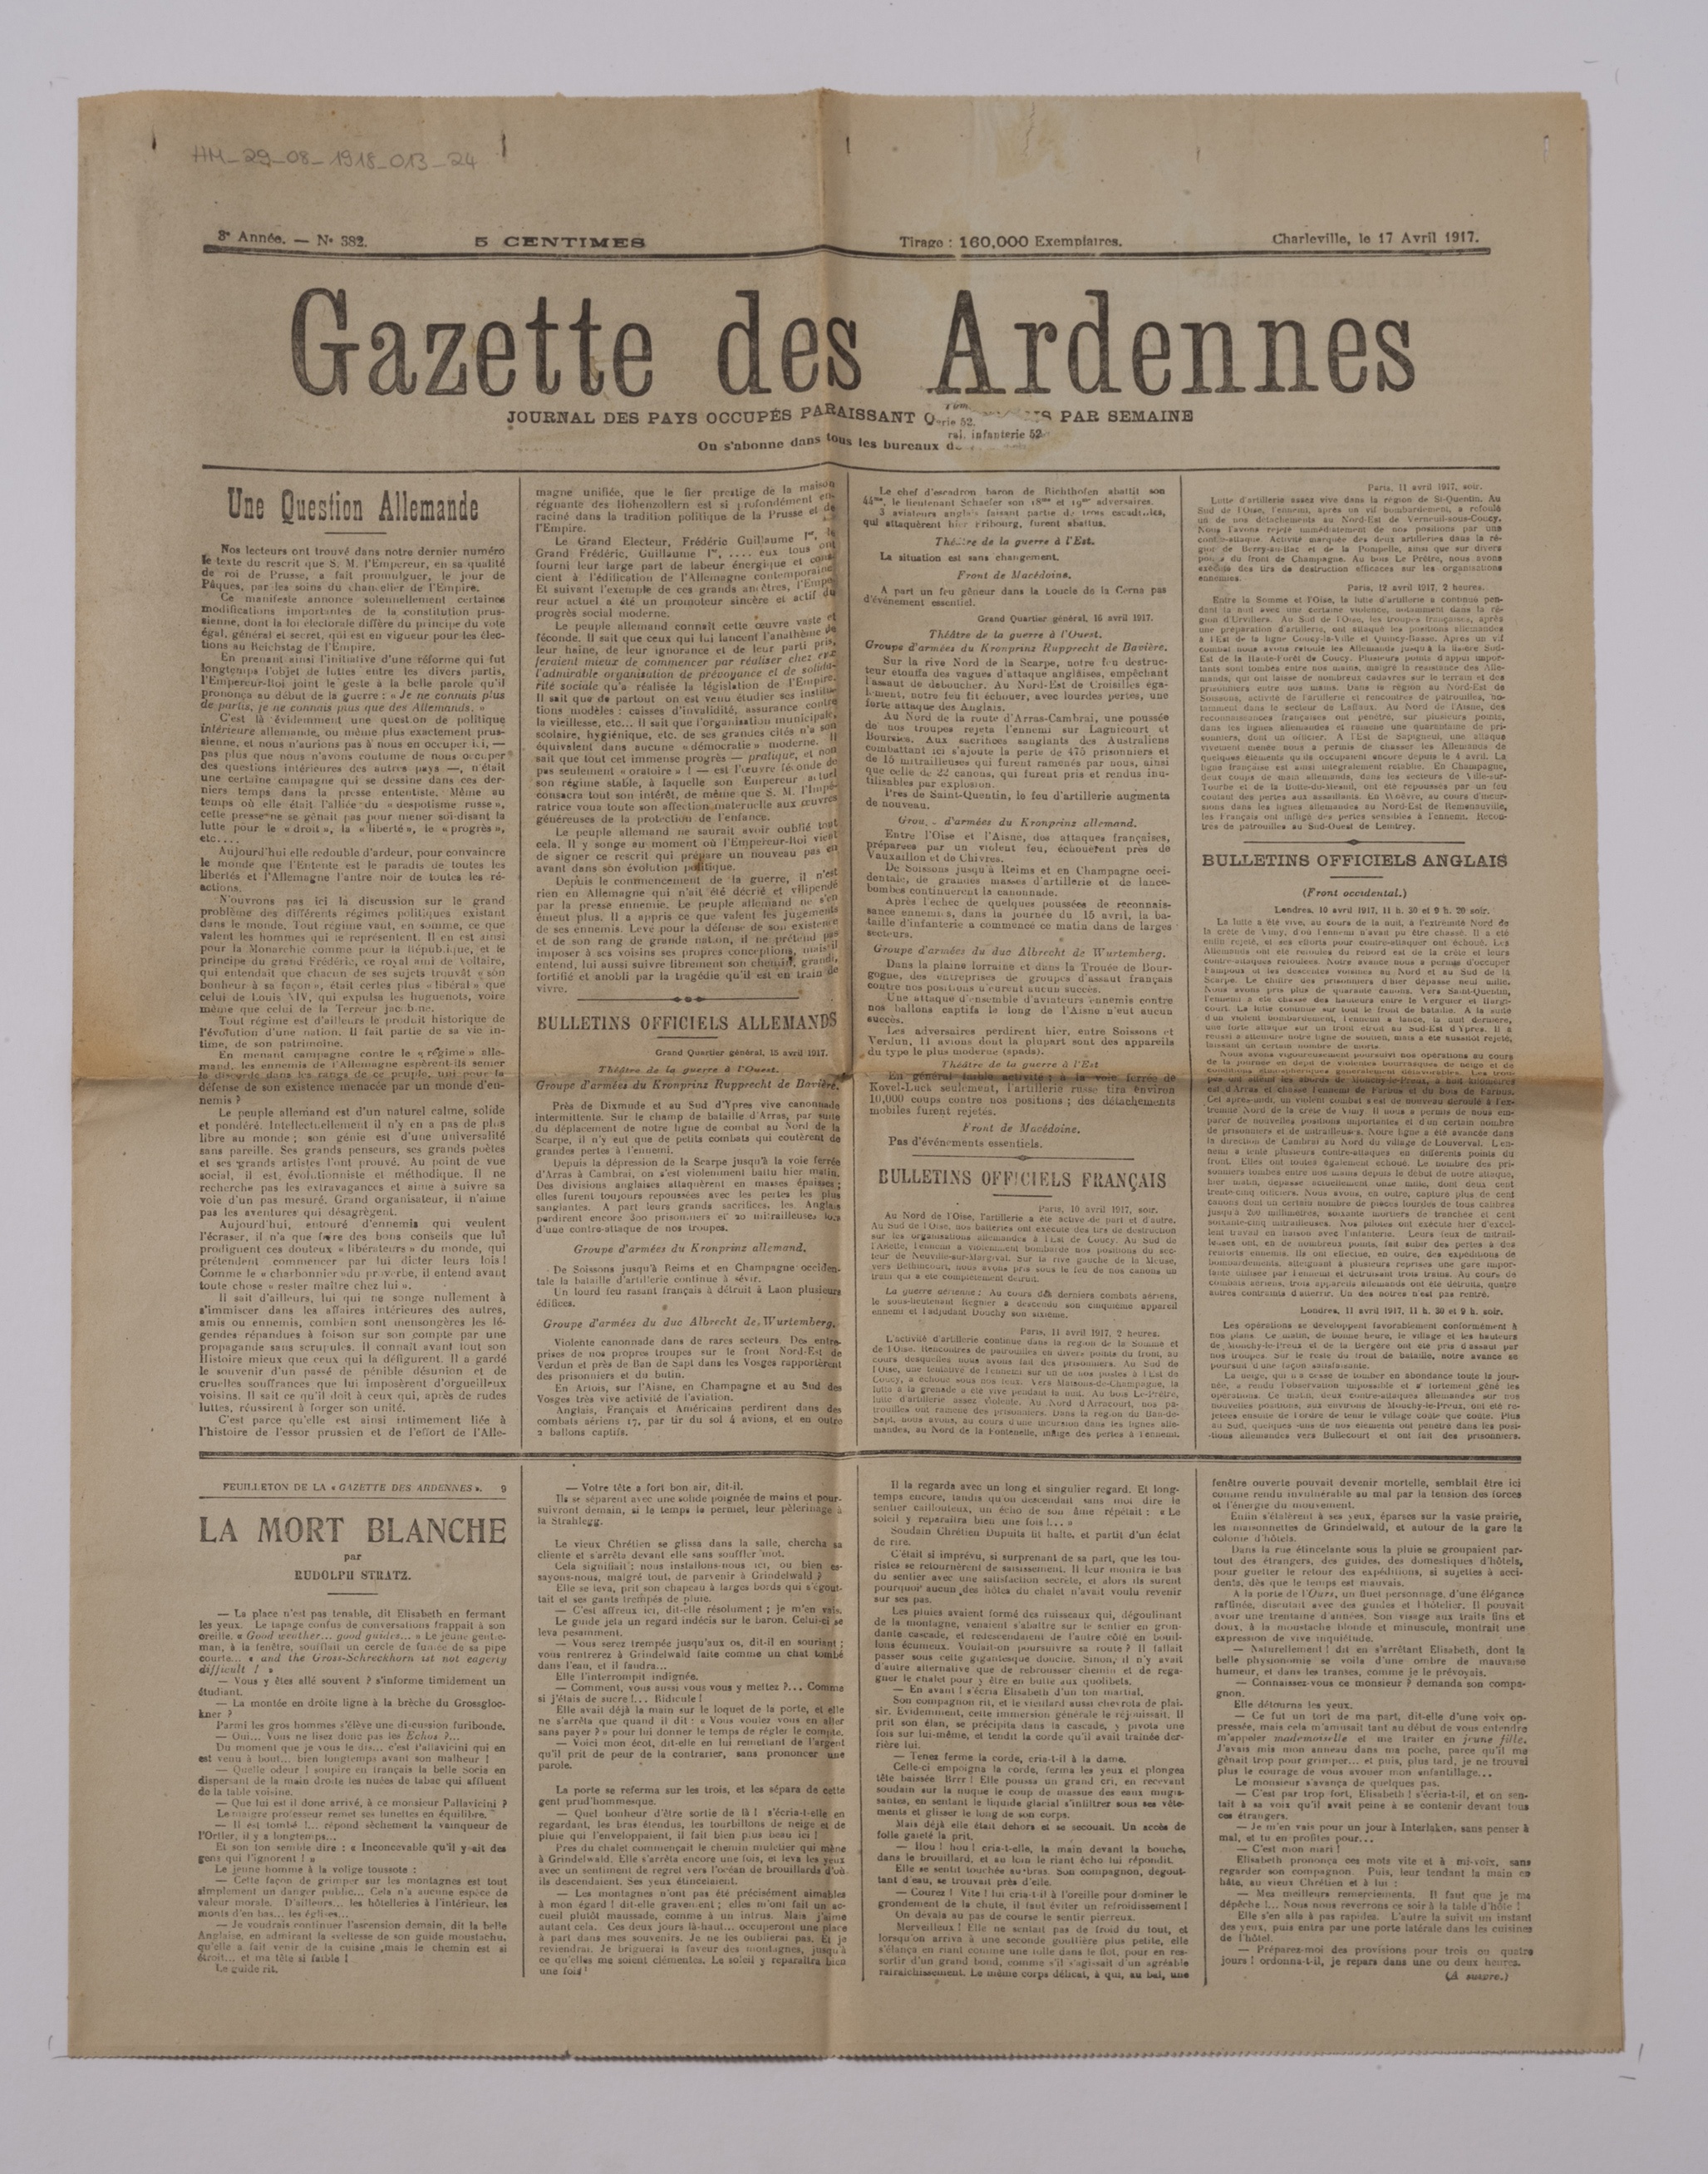 Zeitung: Gazette des Ardennes (Historisches Museum der Pfalz, Speyer CC BY)